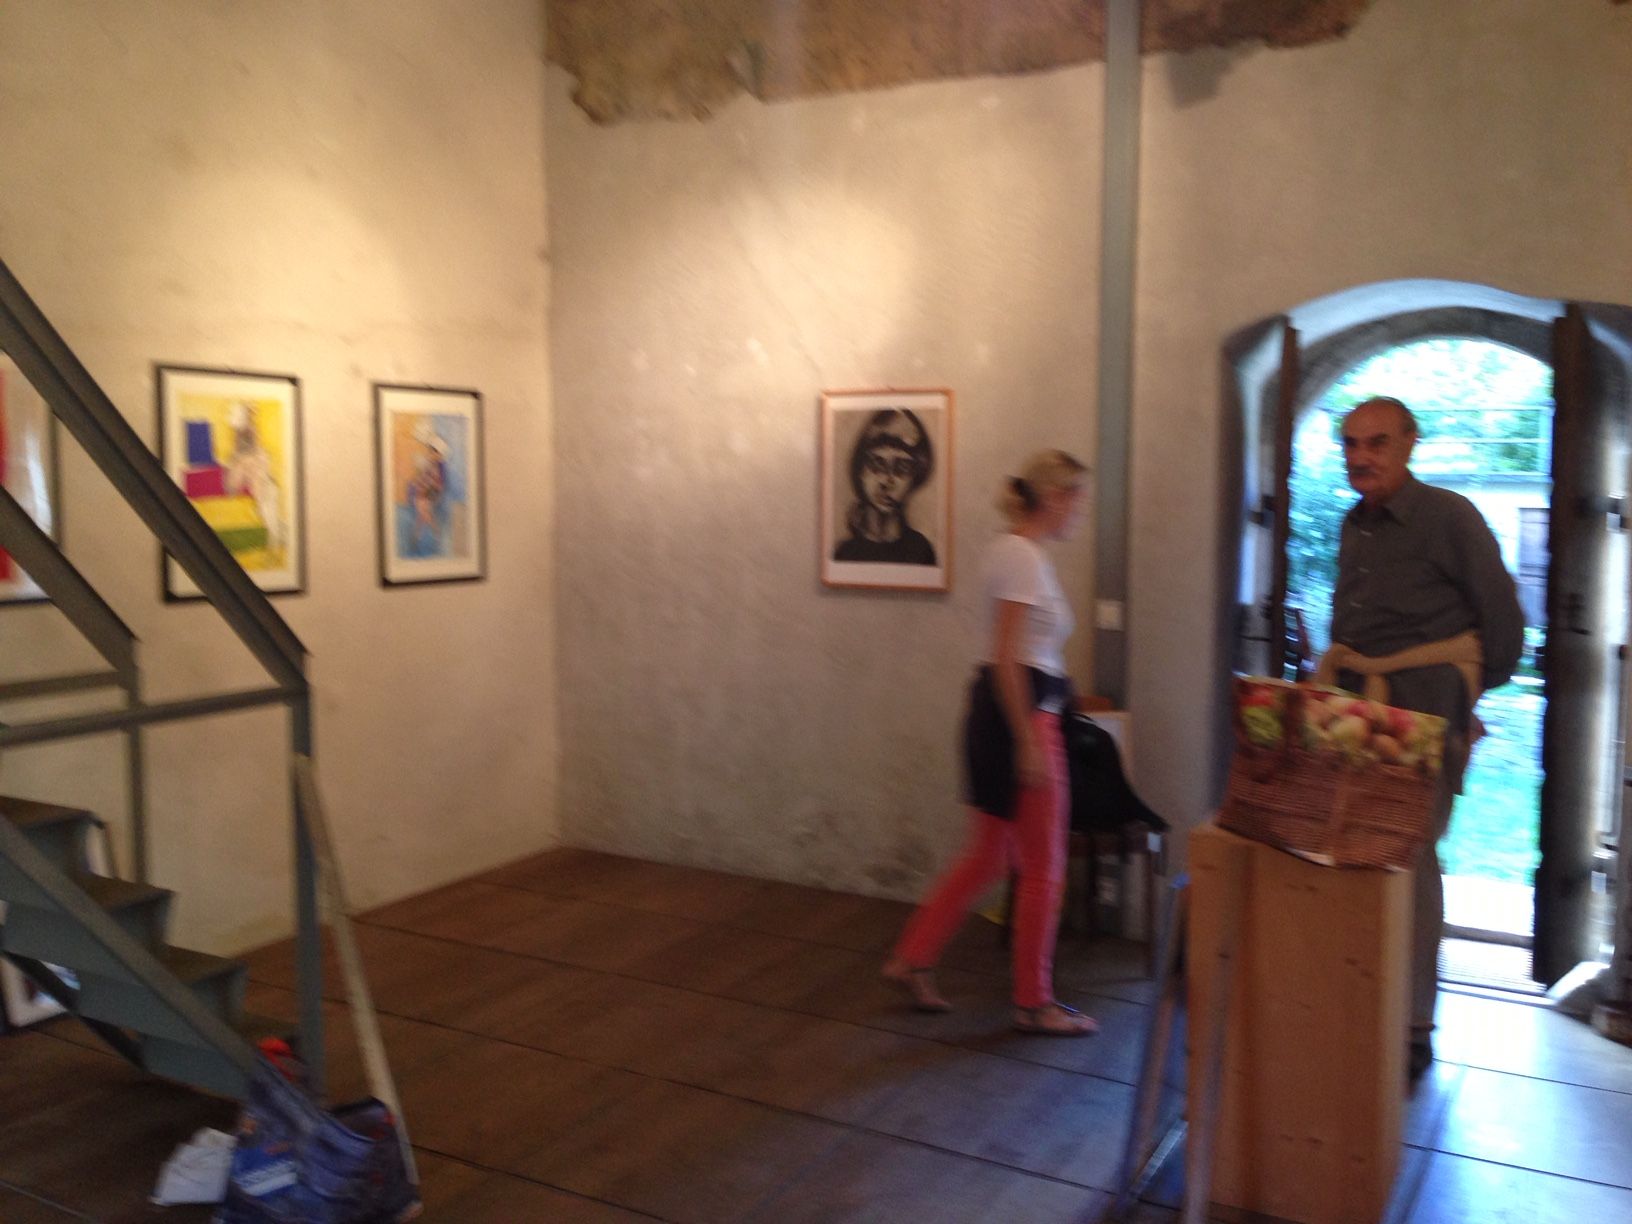 Allestimento Mostra di Emilio Rissone, 28.08.2013 nella Torre Fiorenzana di Grono.